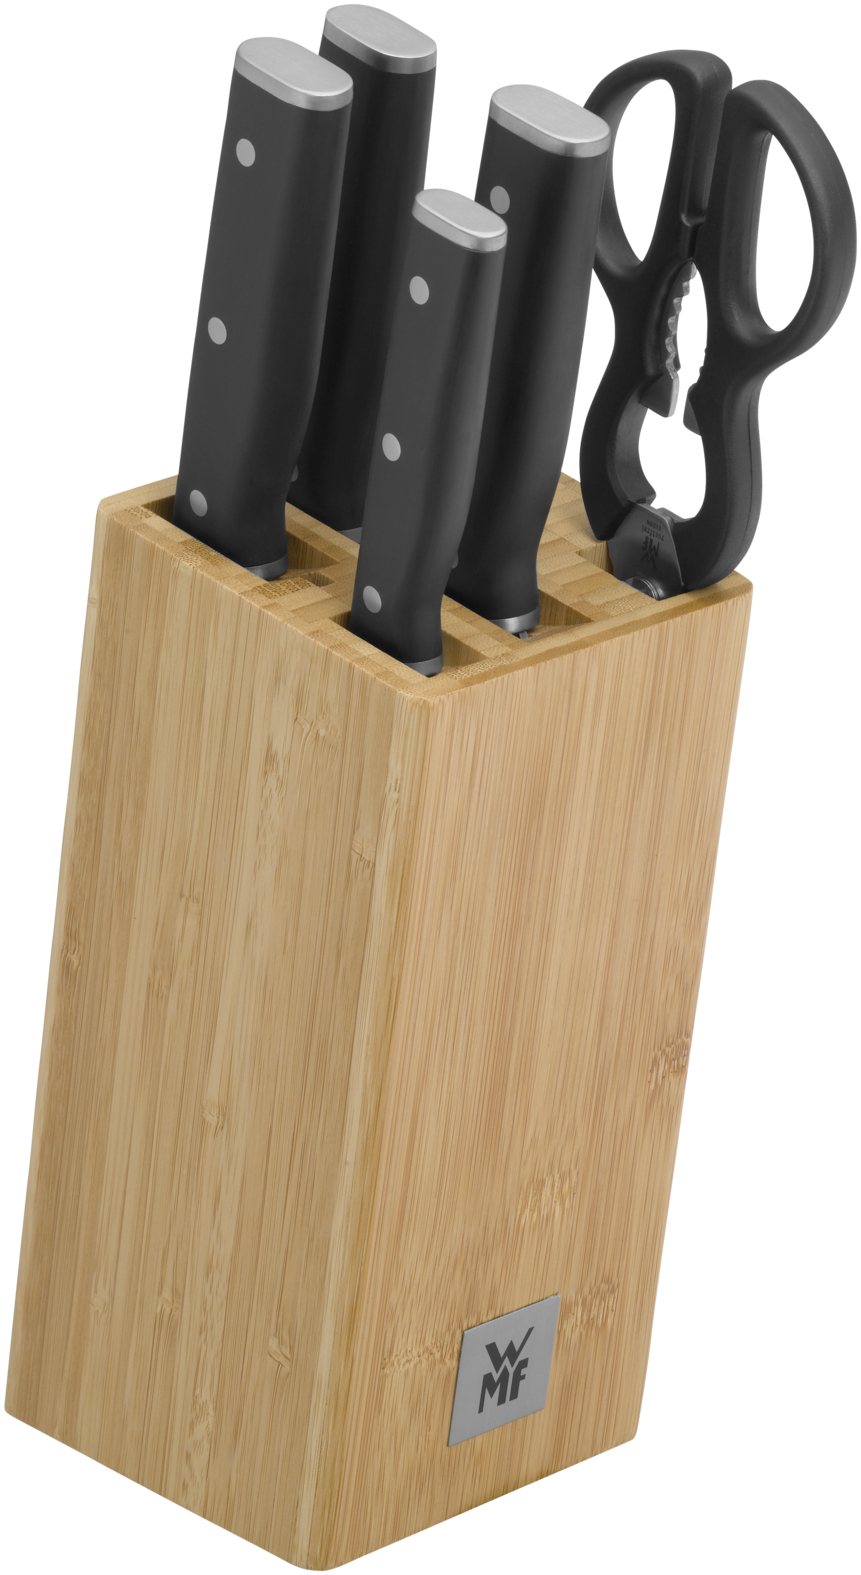 Набор ножей с блоком Sequence, 6 предметов набор профессиональных отверток и бит deko ss100 с удобной подставкой черно желтый